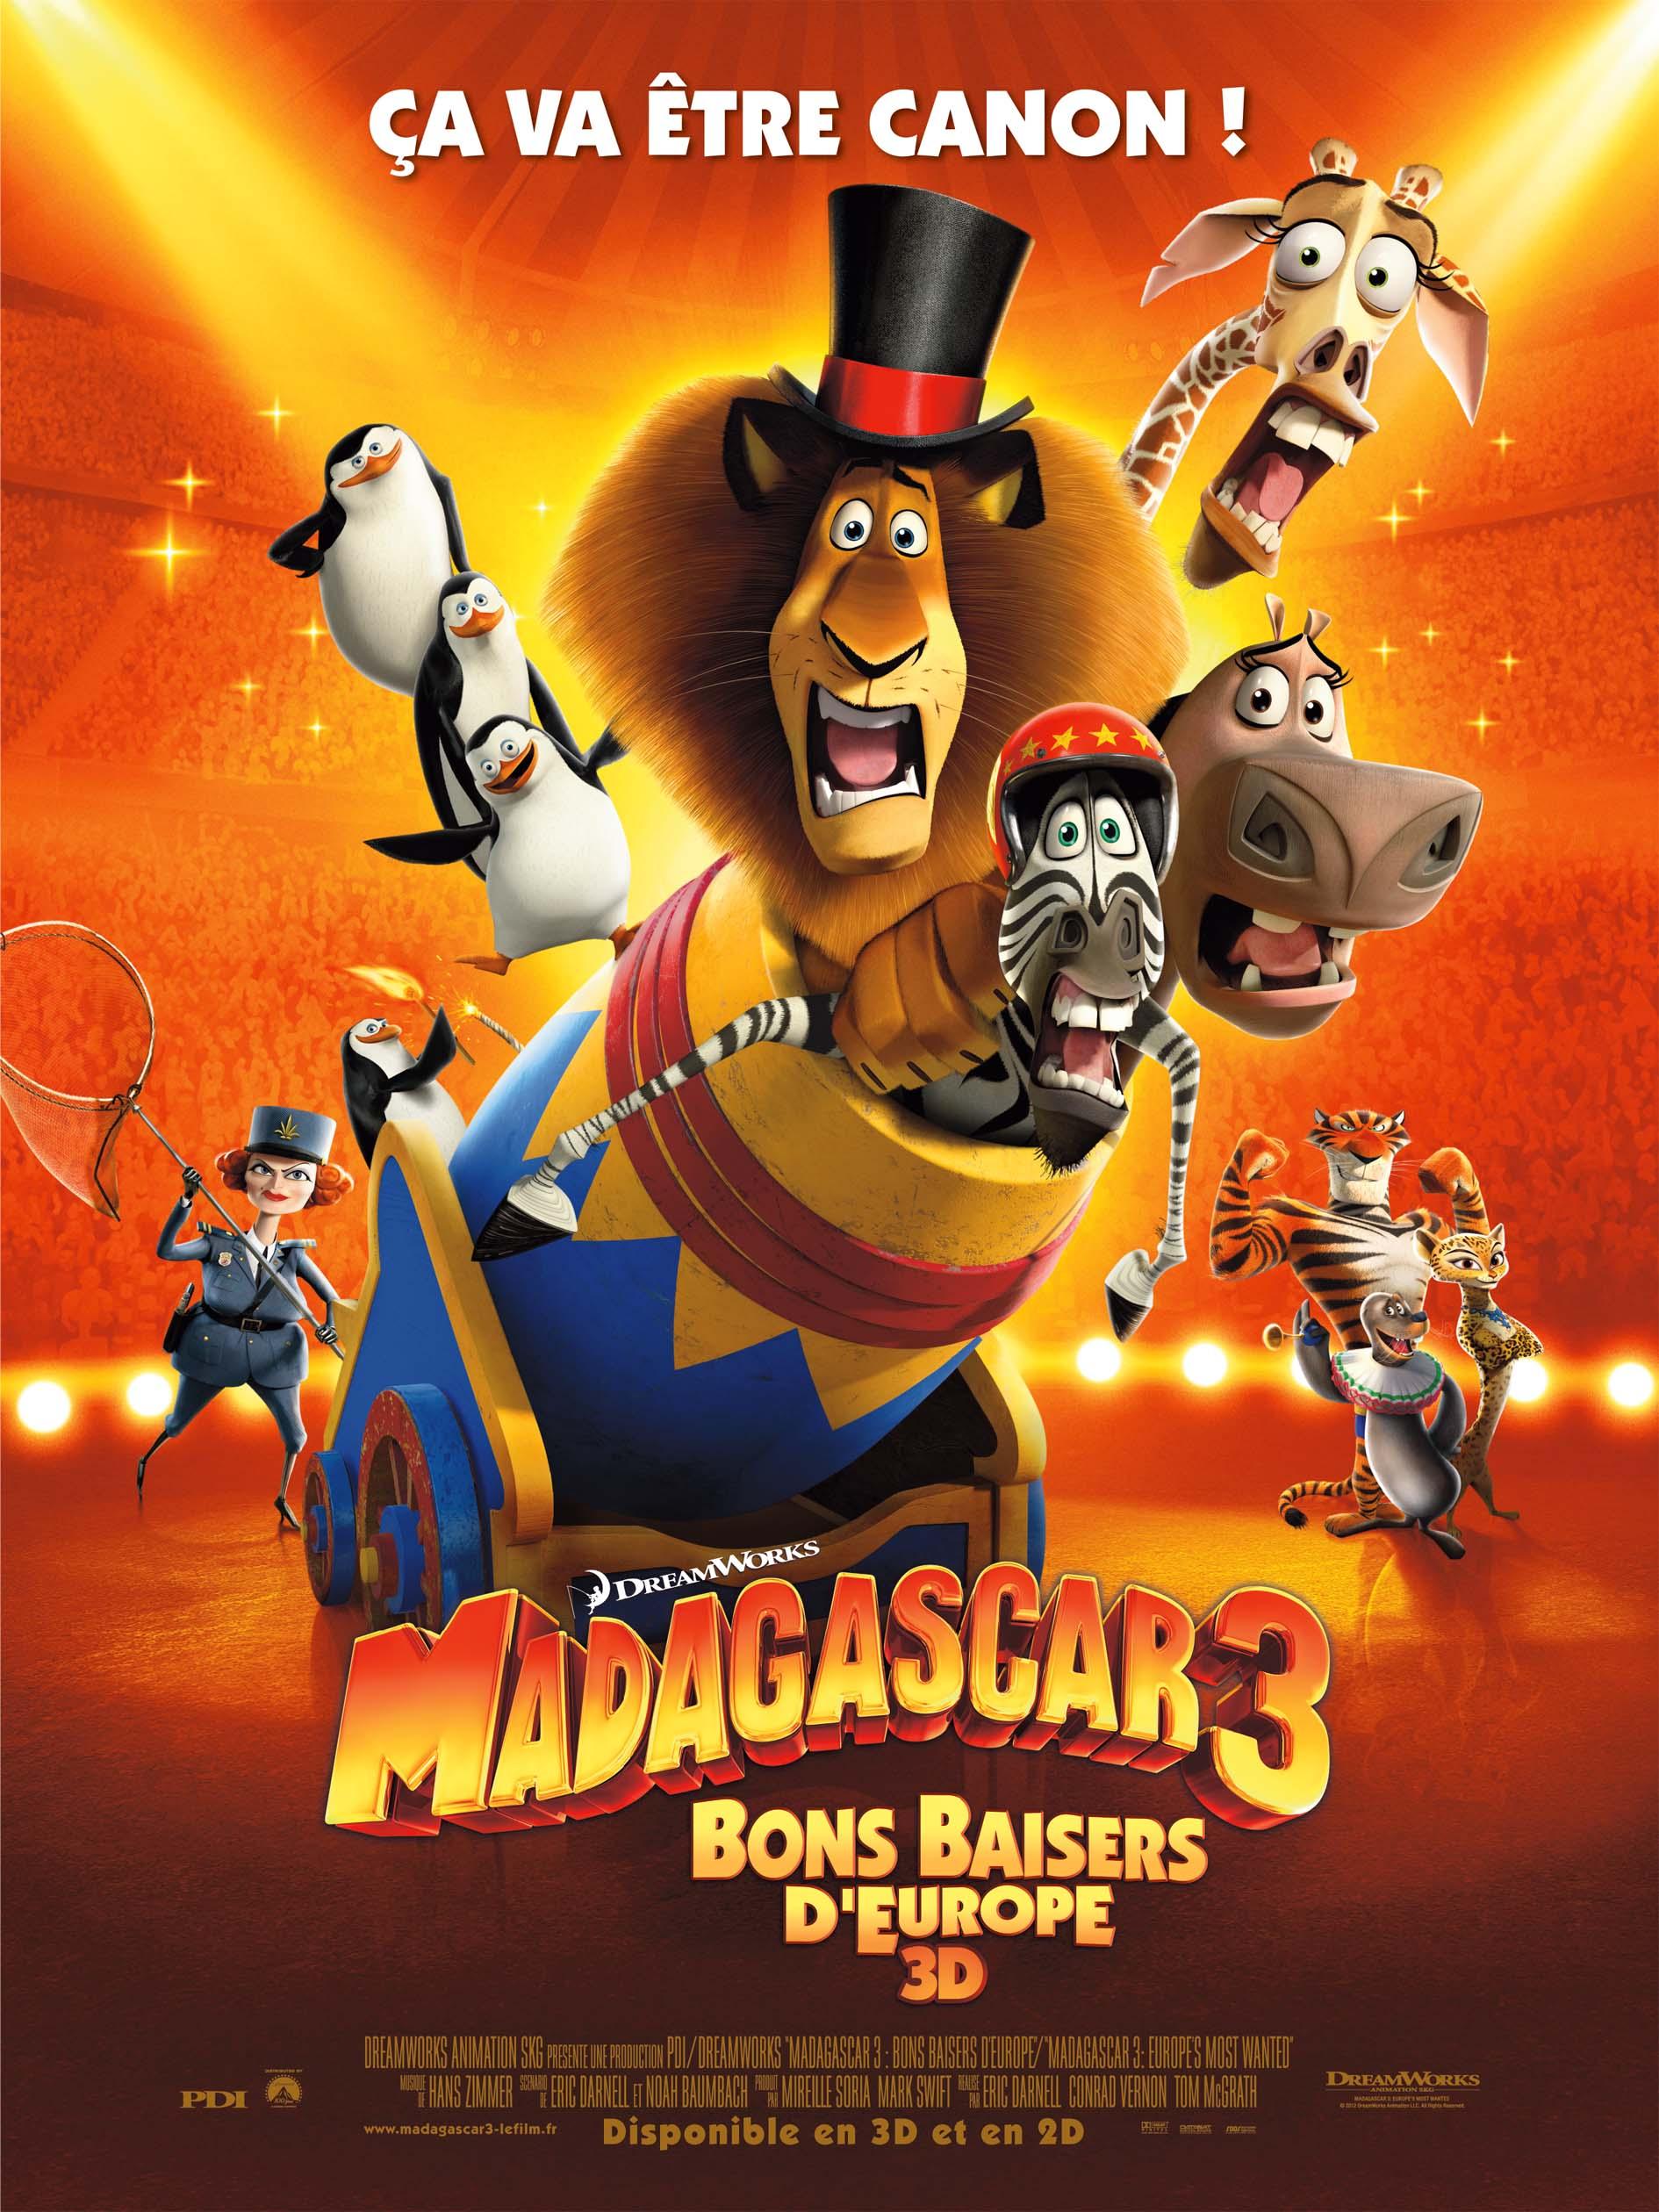 [Avis] Madagascar 3: Bons Baisers D’Europe vous avez le mal du pays?